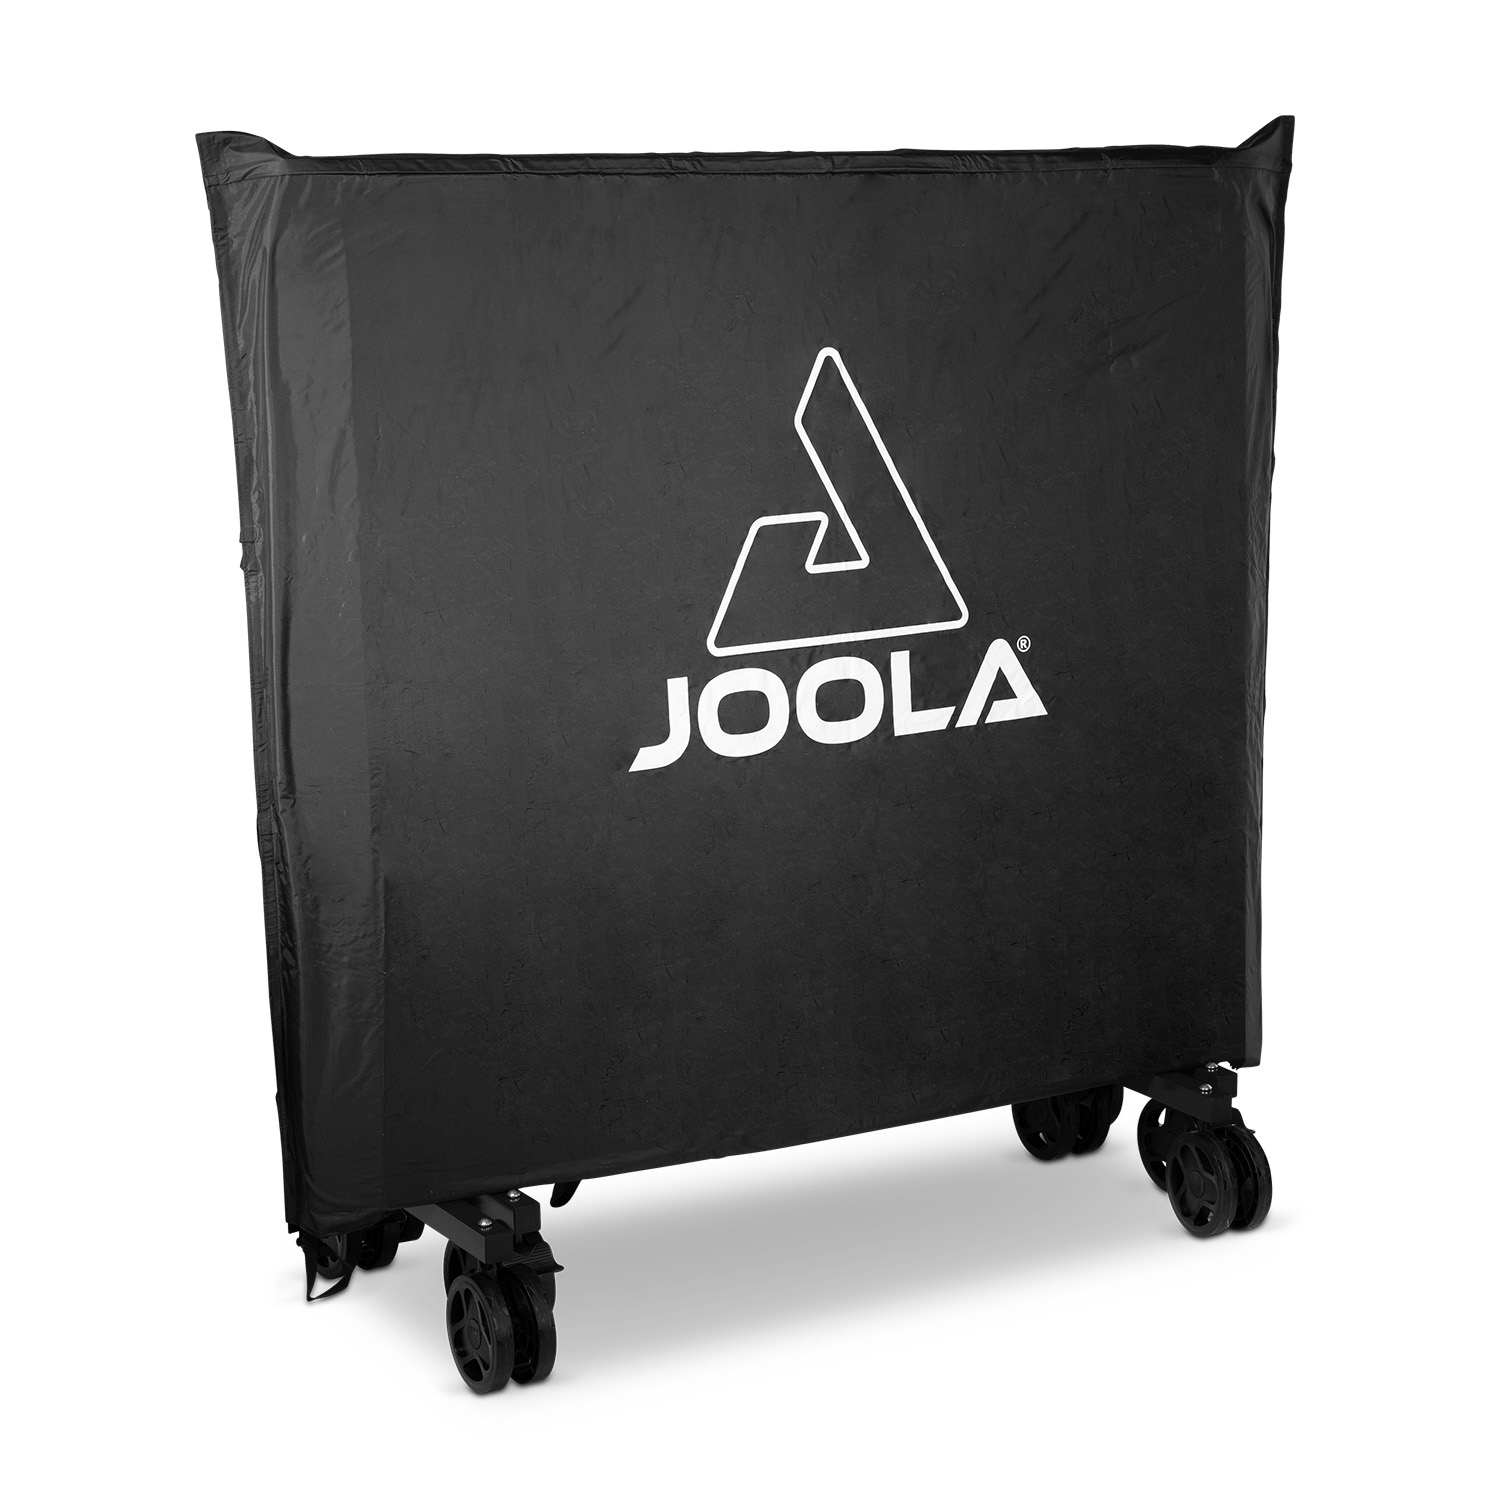 JOOLA Tischtennis | Tischtennis Tischabdeckung JOOLA GmbH